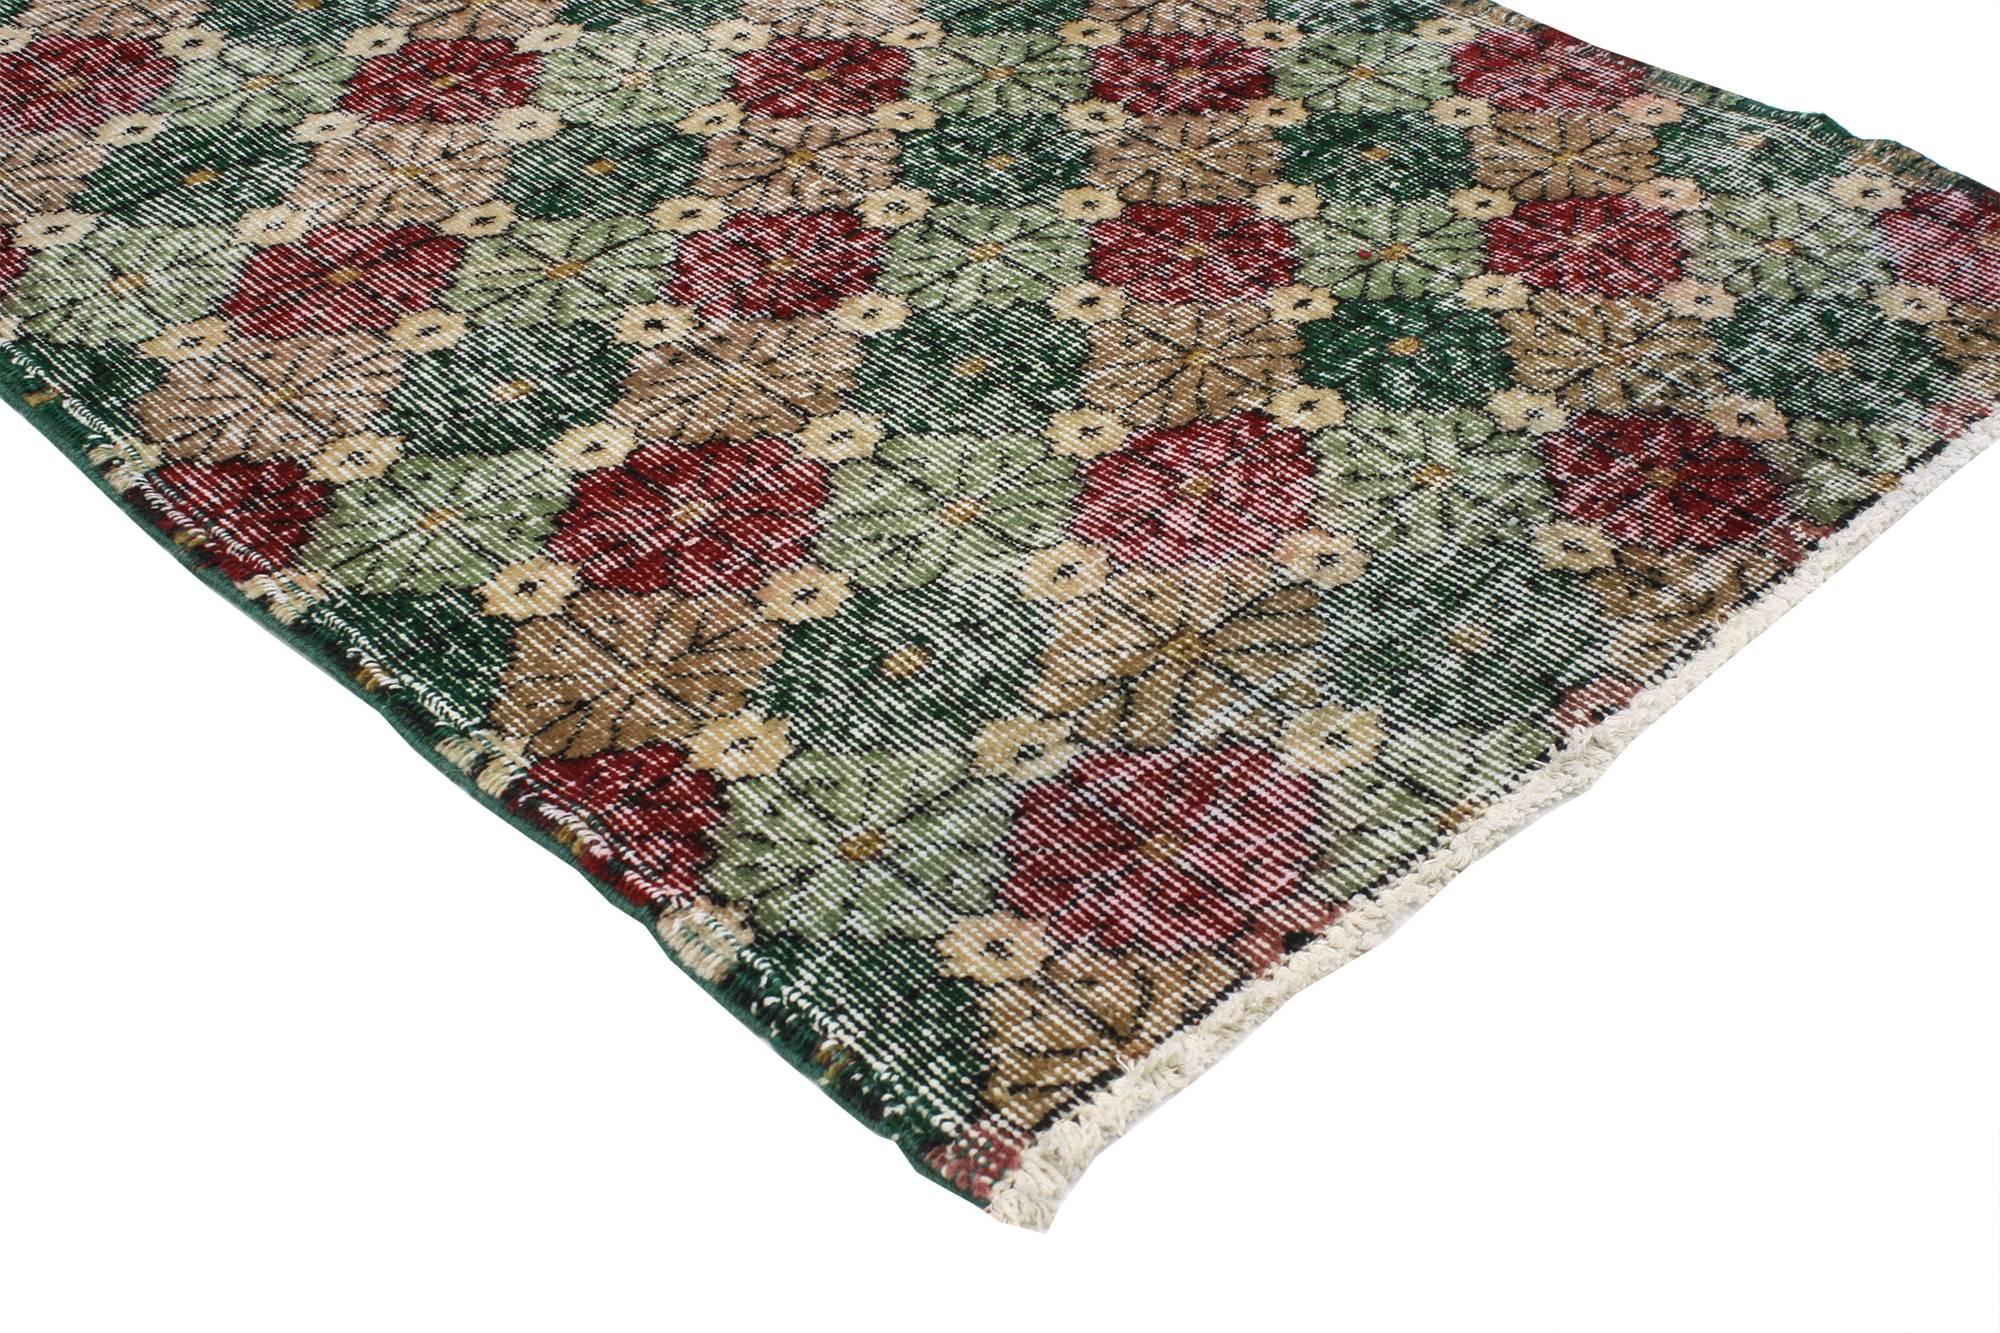 51913 Tapis Sivas turc vintage avec style traditionnel anglais rustique 02'09 x 06'02. Amoureusement usé par le temps avec une élégance discrète, ce tapis turc Sivas en laine nouée à la main incarne magnifiquement un style traditionnel anglais. Le